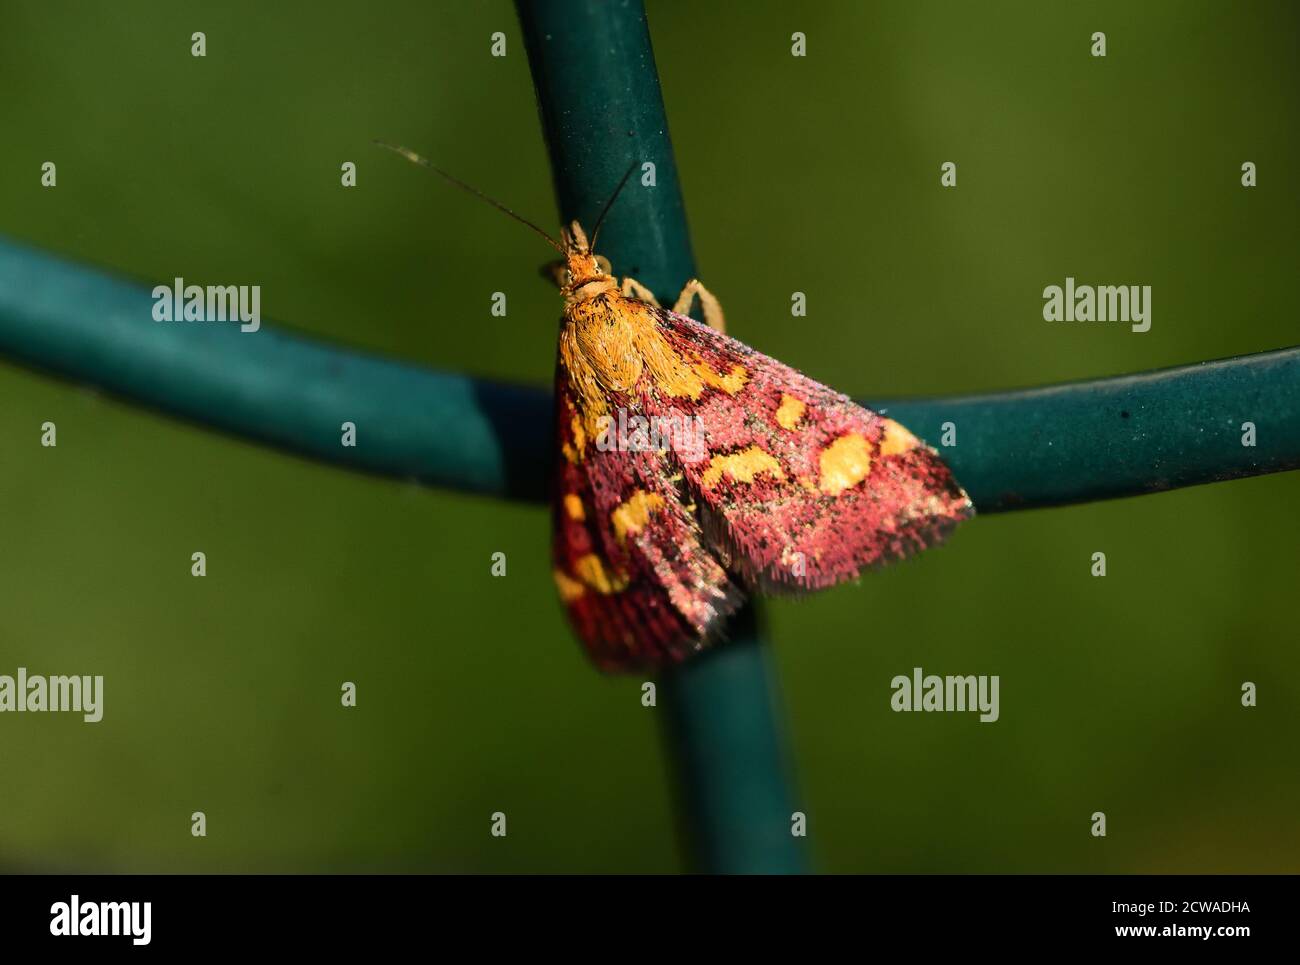 Petite papillon isolée de l'espèce pyrausta purpuralis, une espèce de papillon de la famille des Crambidae, photographiée avec une macro-lentille alors qu'elle est attachée à un Banque D'Images